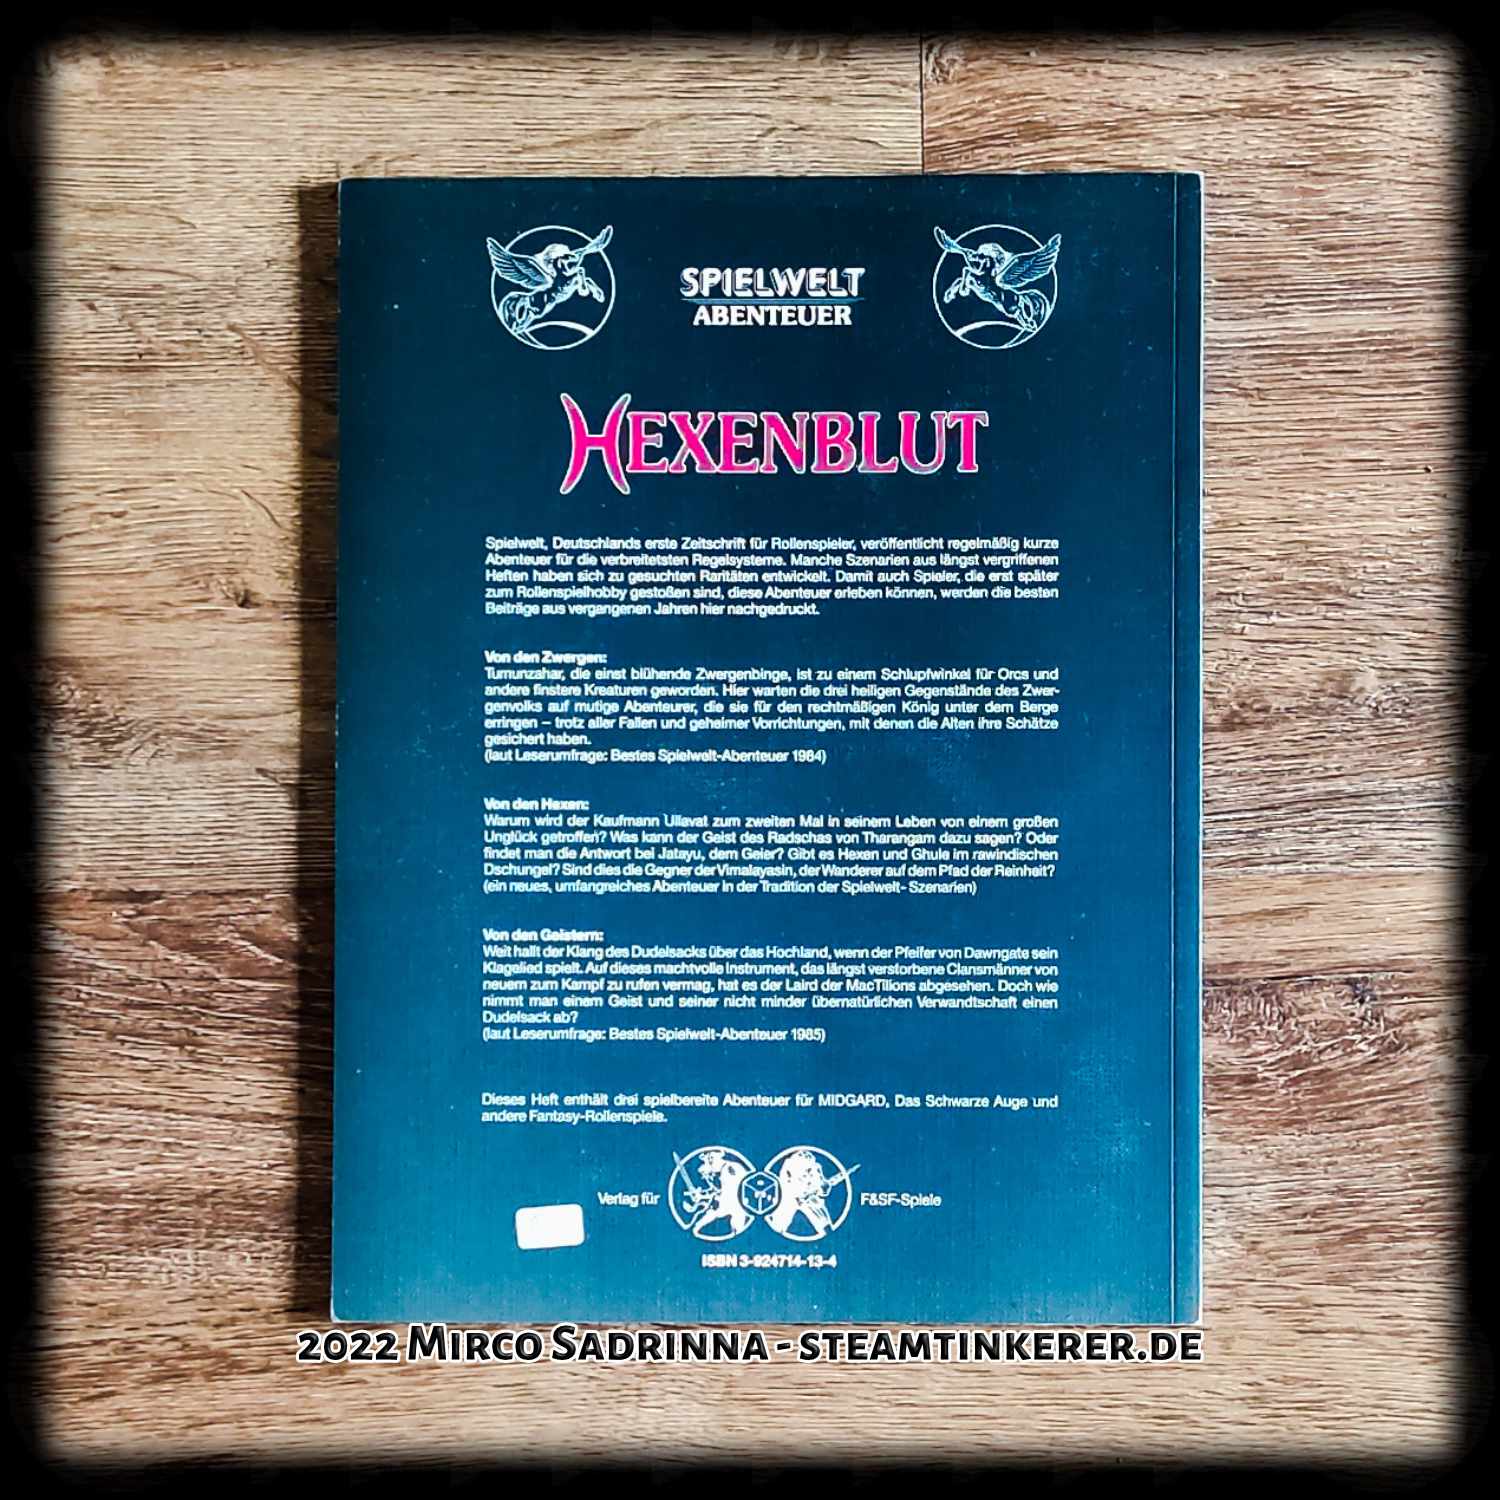 Hexenblut - Ein Spielwelt-Abenteuer aus dem Jahre 1990 vom Verlag für F&SF-Spiele.